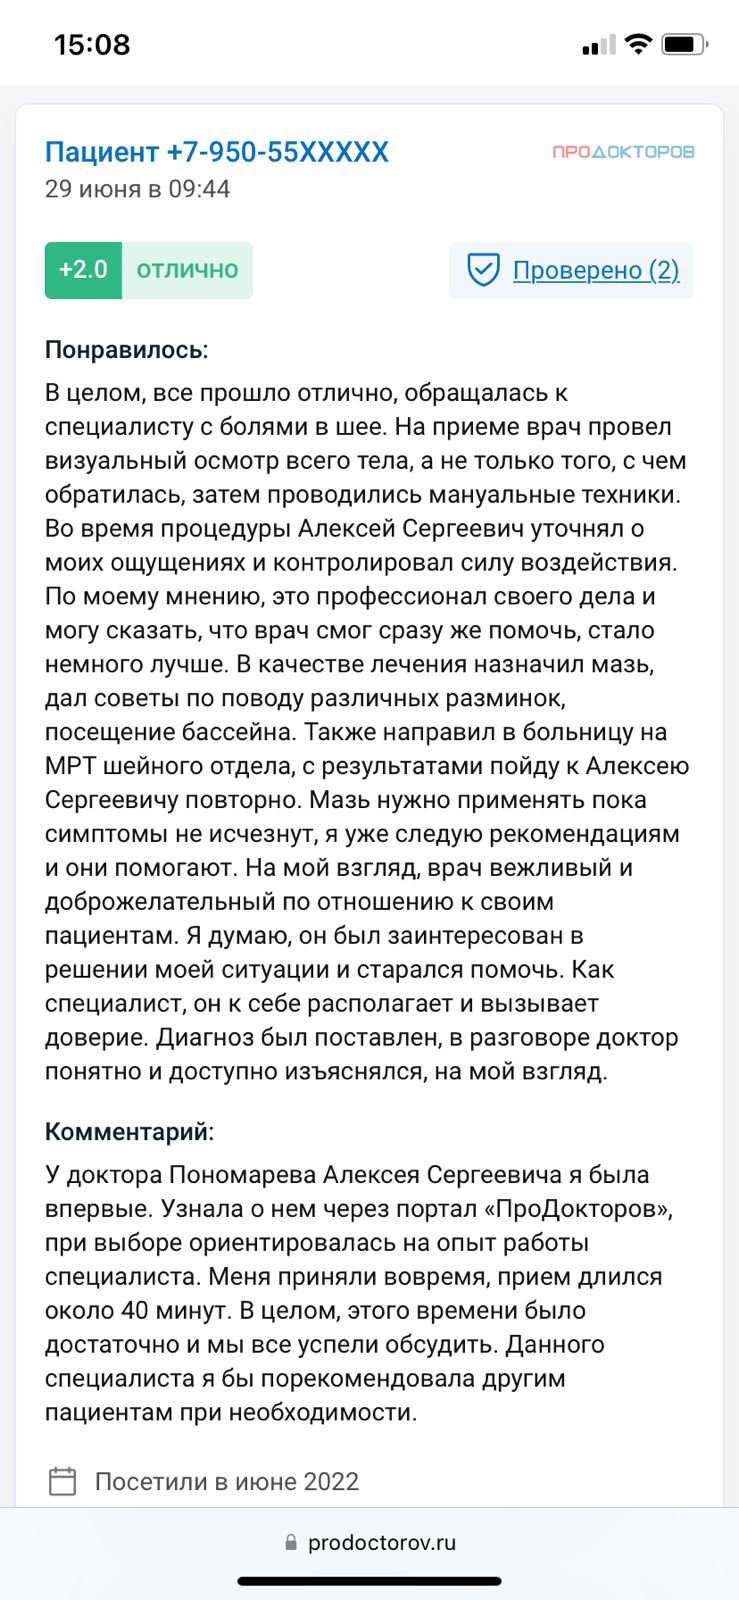 Отзывы о Пономареве Алексее Сергеевиче с сайта ПроДокторов